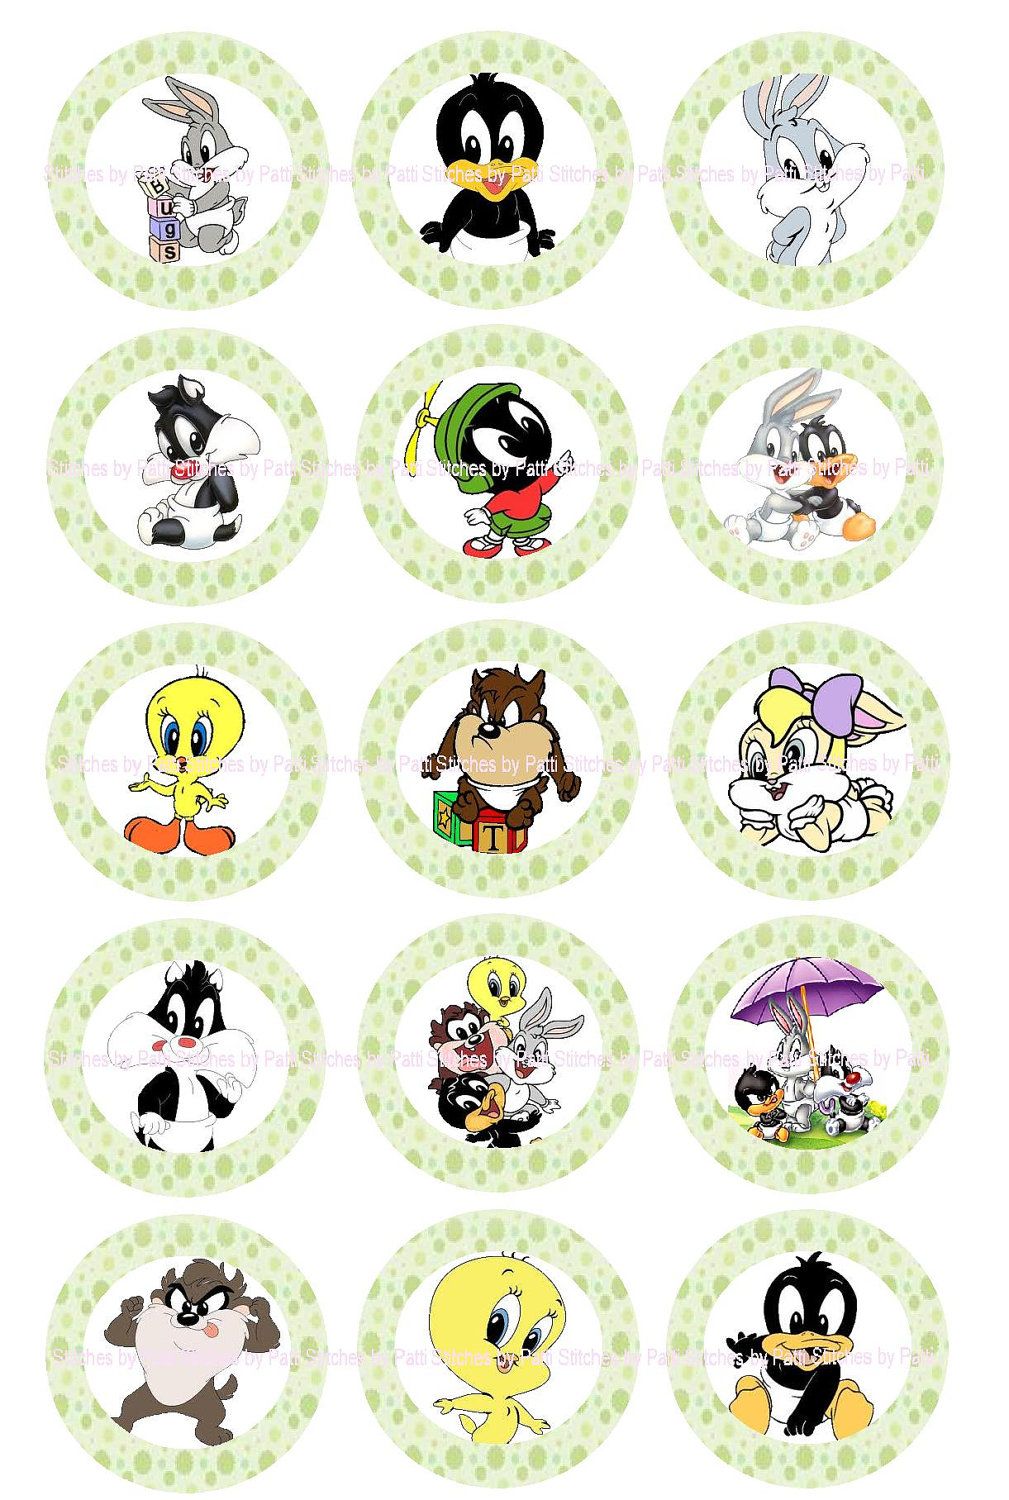 Imagenes De Los Looney Tunes Bebes Para Imprimir - HD Wallpaper 